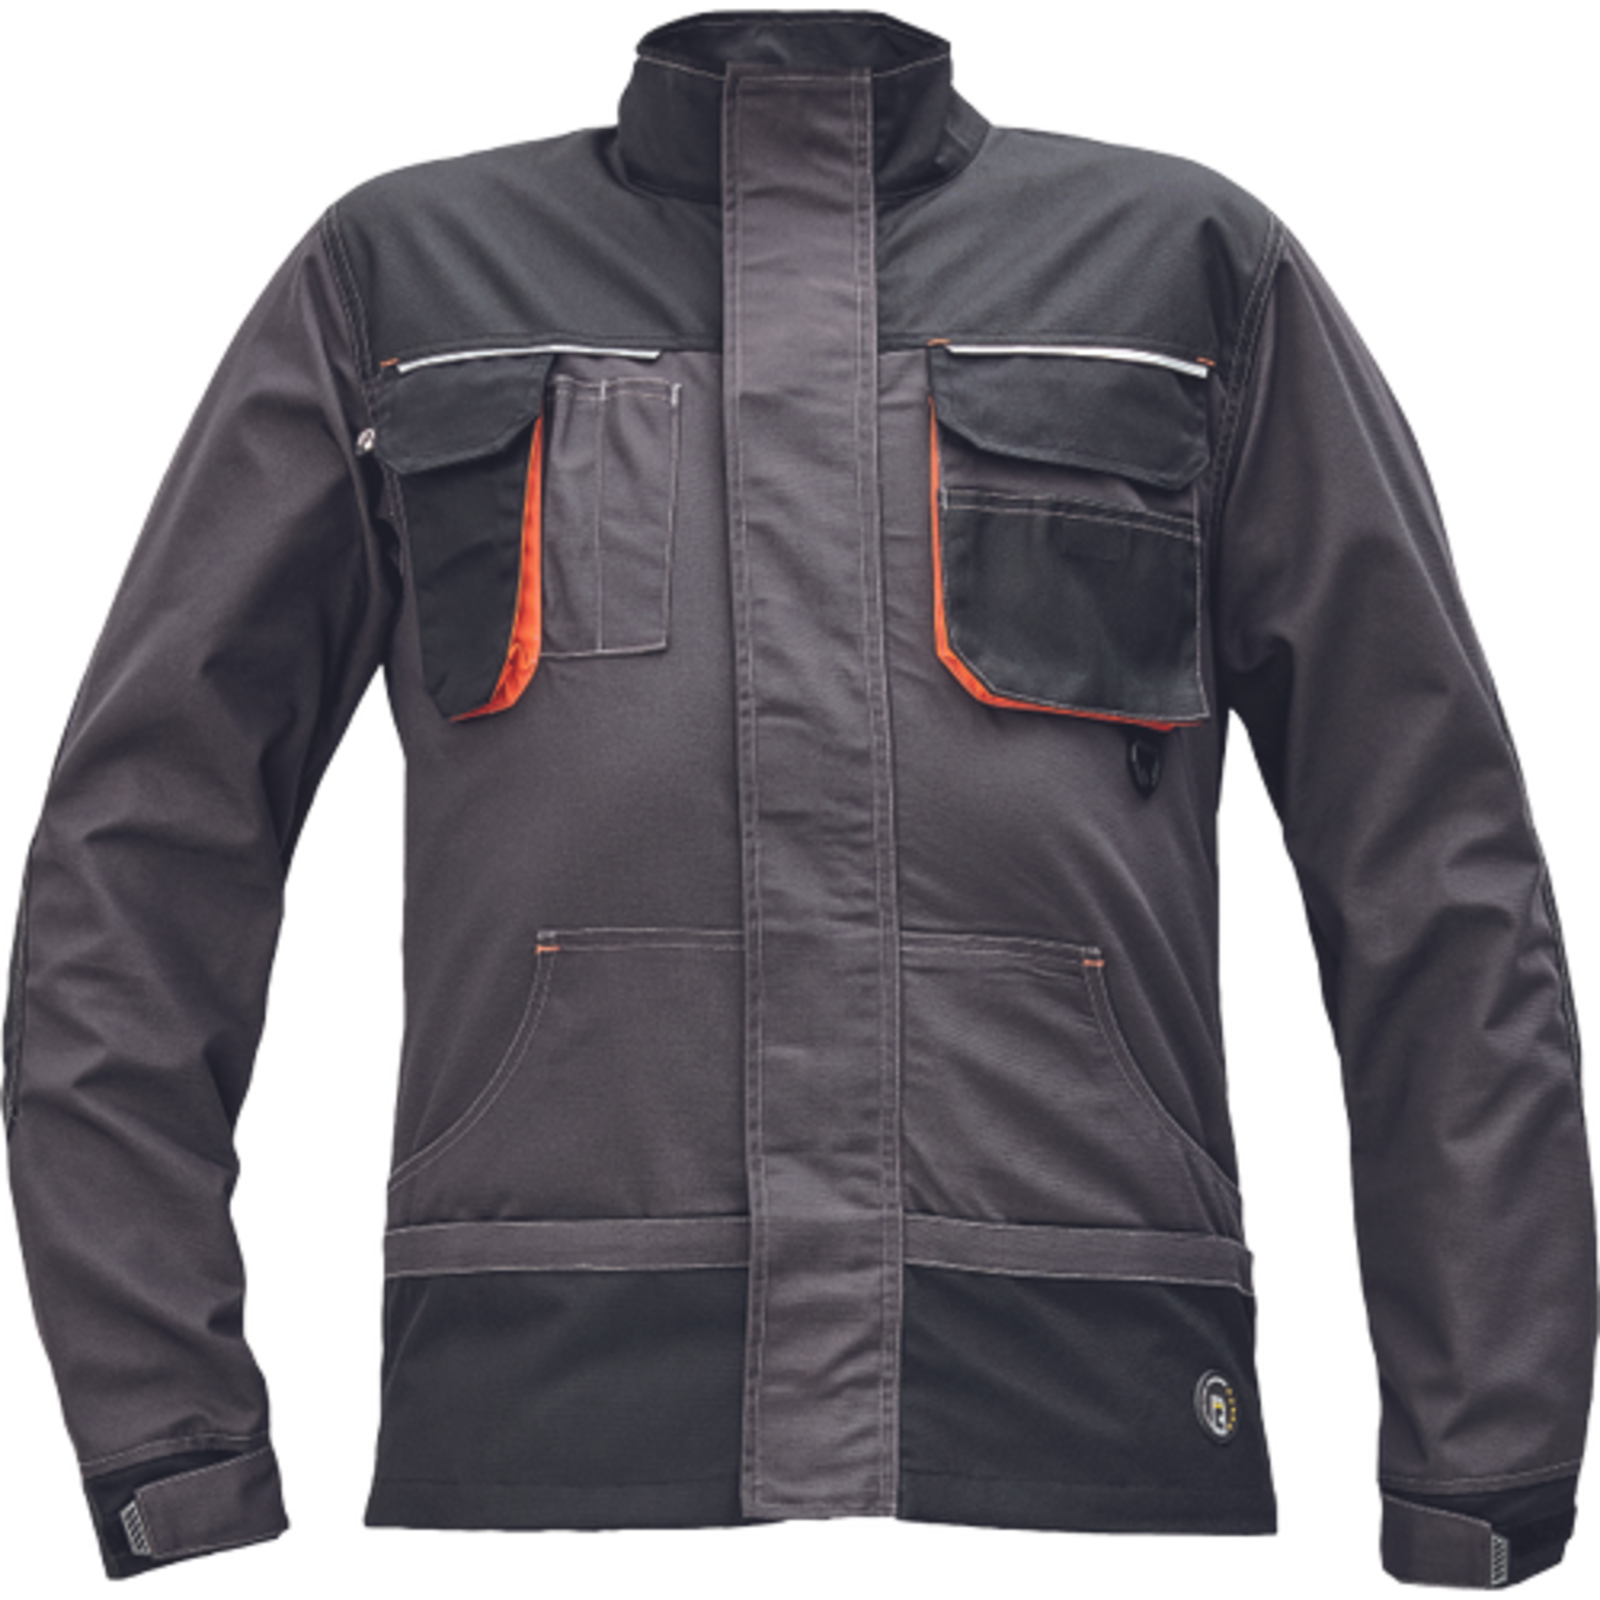 Odolná montérková bunda Emerton Plus - veľkosť: 50, farba: antracit/oranžová